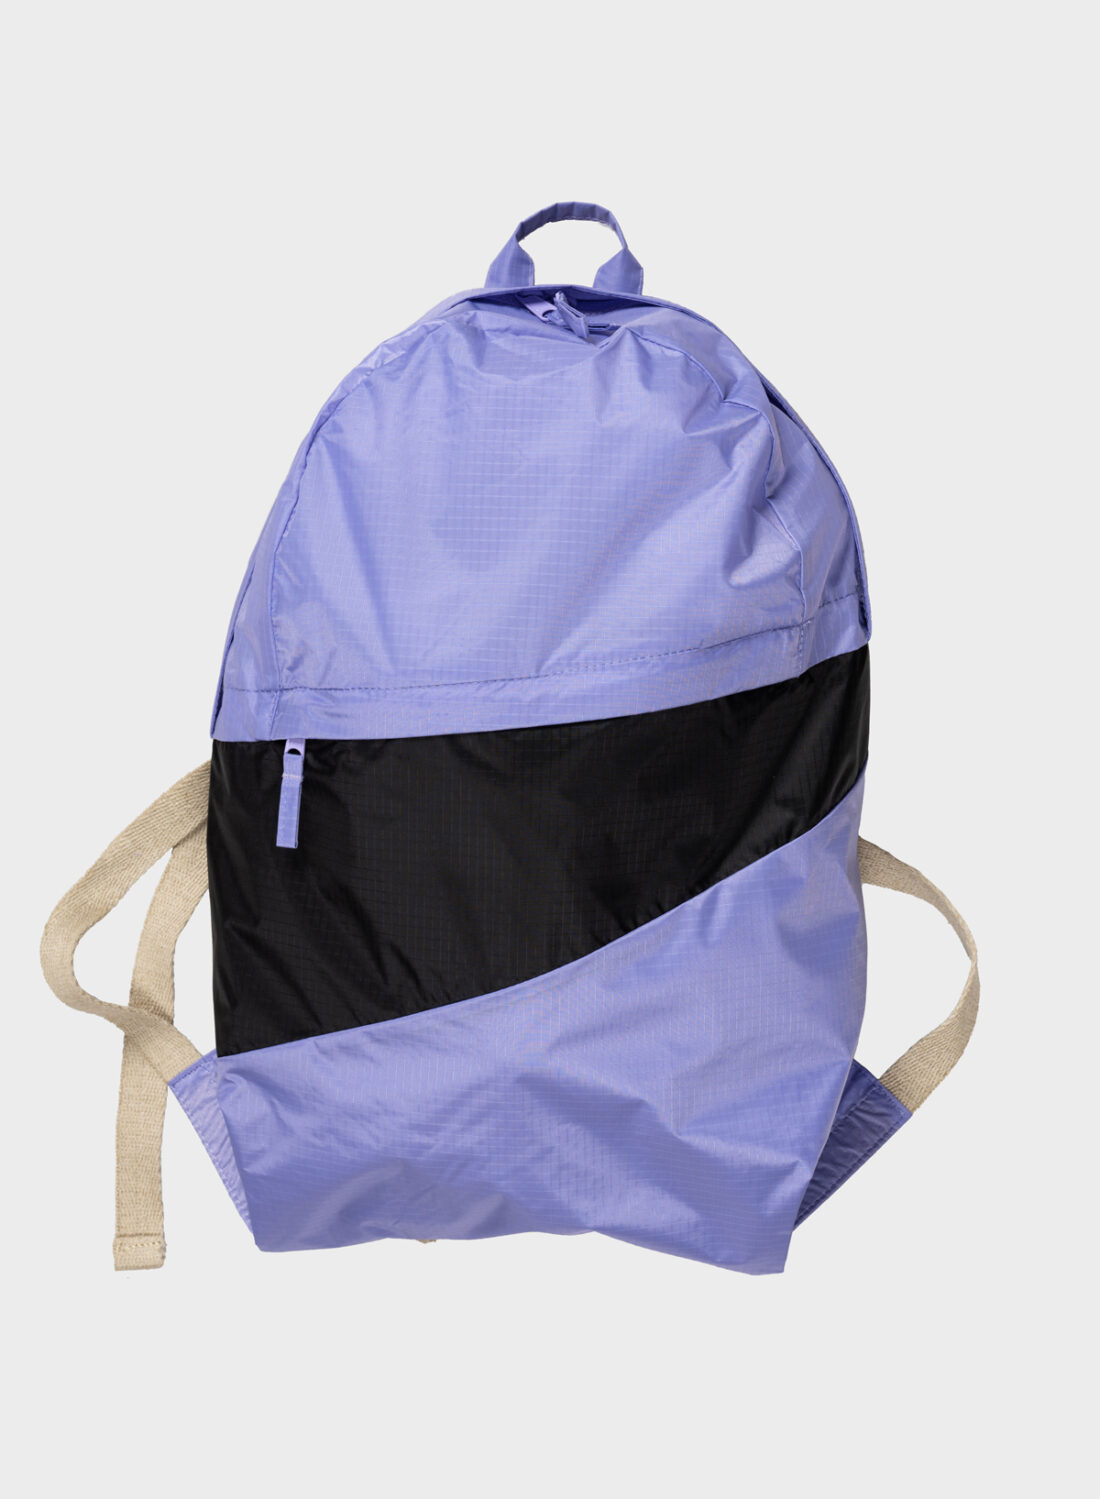 susan-bijl-the-new-foldable-backpack-treble-black